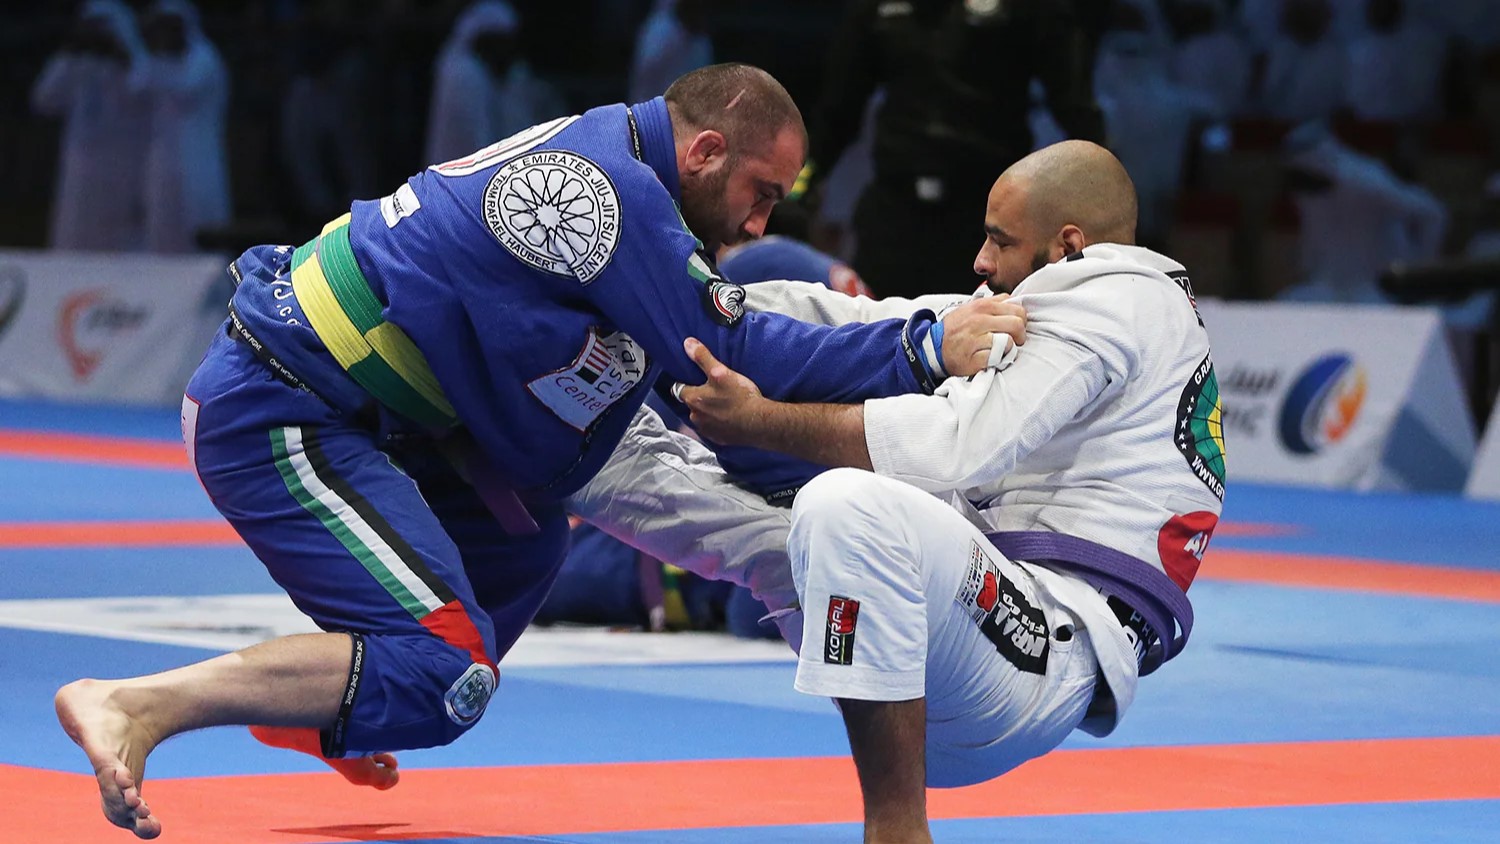 Two men grappling in a Brazilian Jiu-Jitsu match